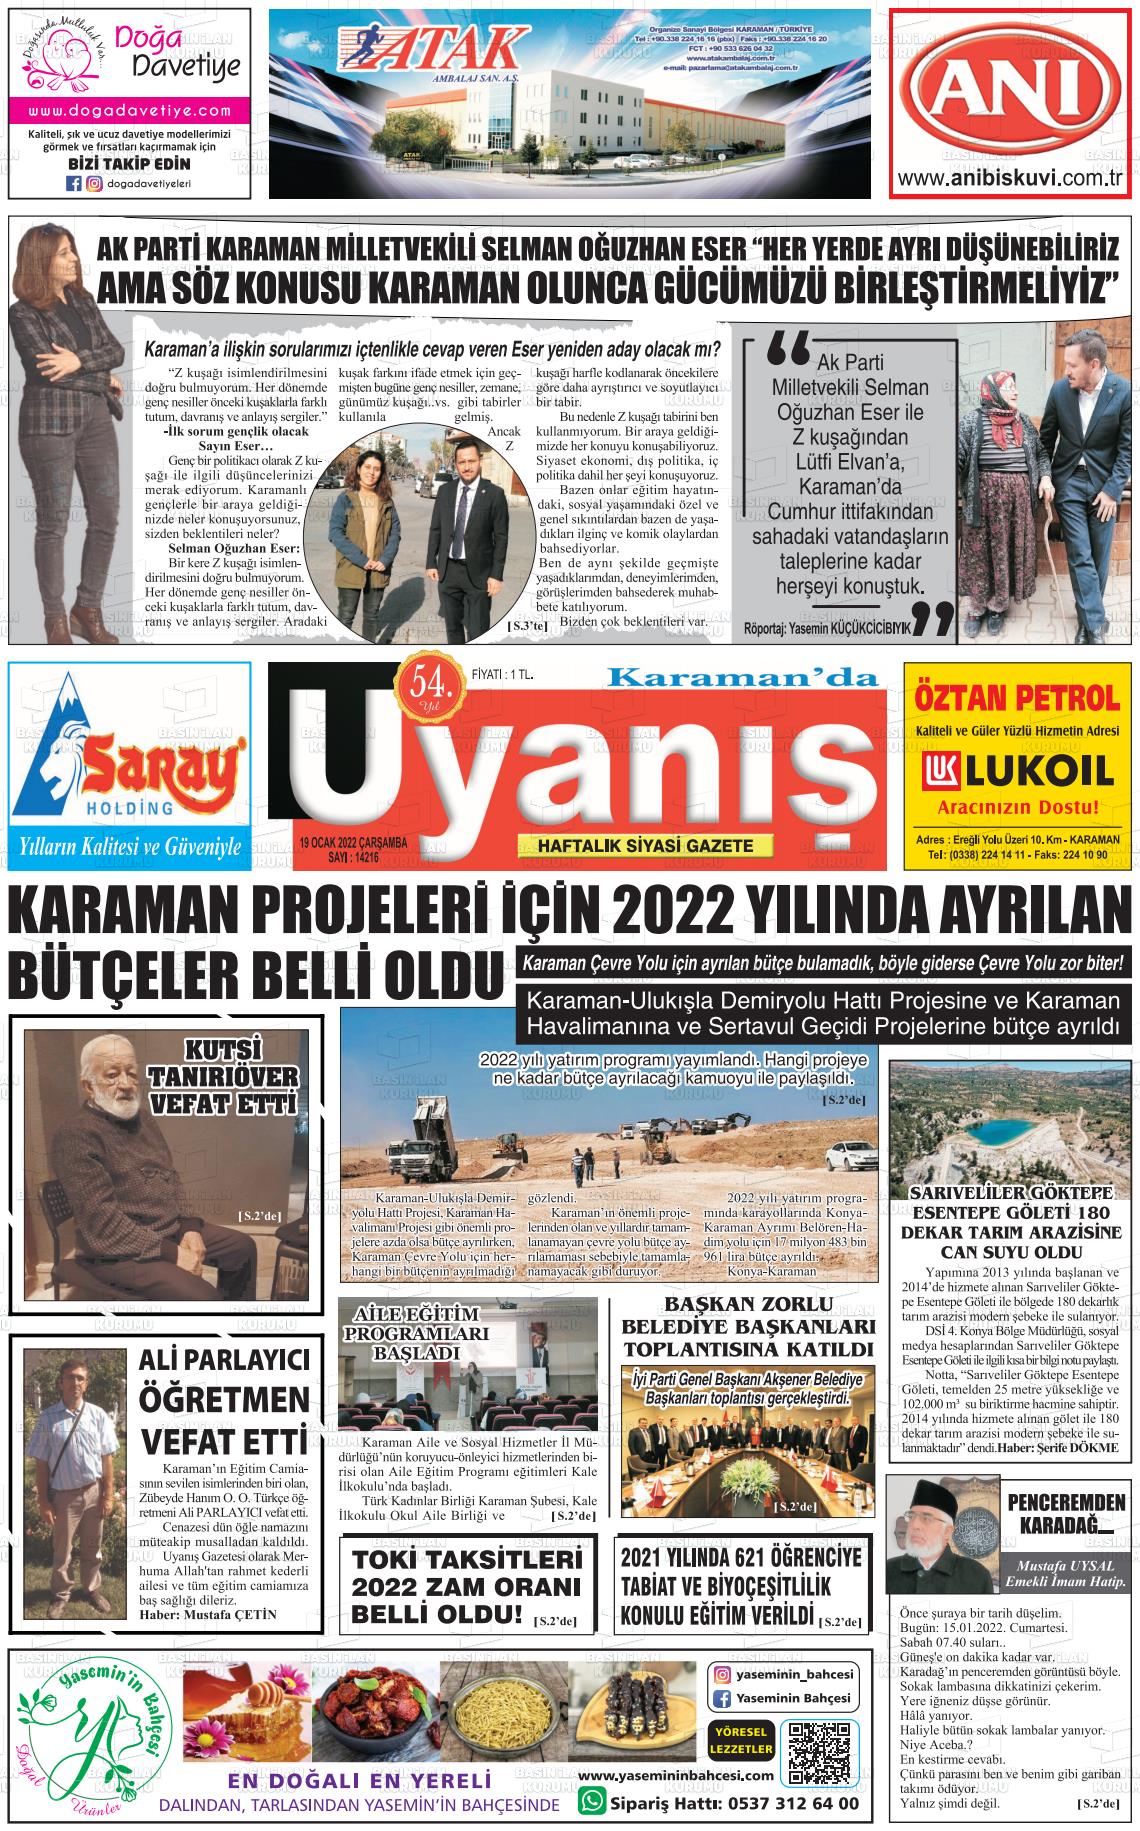 19 Ocak 2022 Karamanda Uyanış Gazete Manşeti